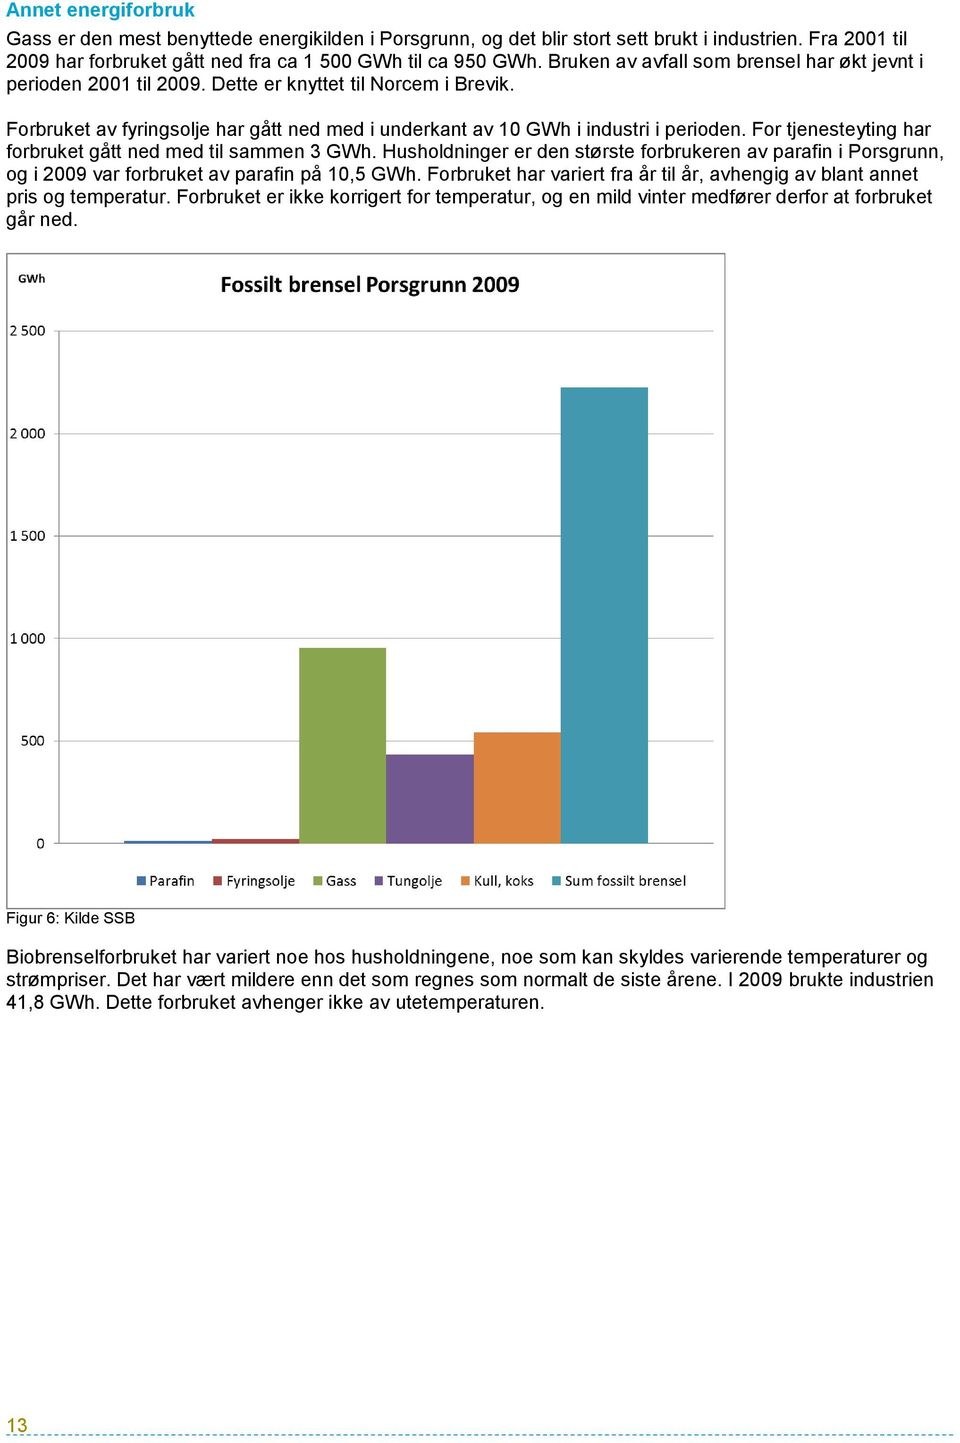 For tjenesteyting har forbruket gått ned med til sammen 3 GWh. Husholdninger er den største forbrukeren av parafin i Porsgrunn, og i 2009 var forbruket av parafin på 10,5 GWh.